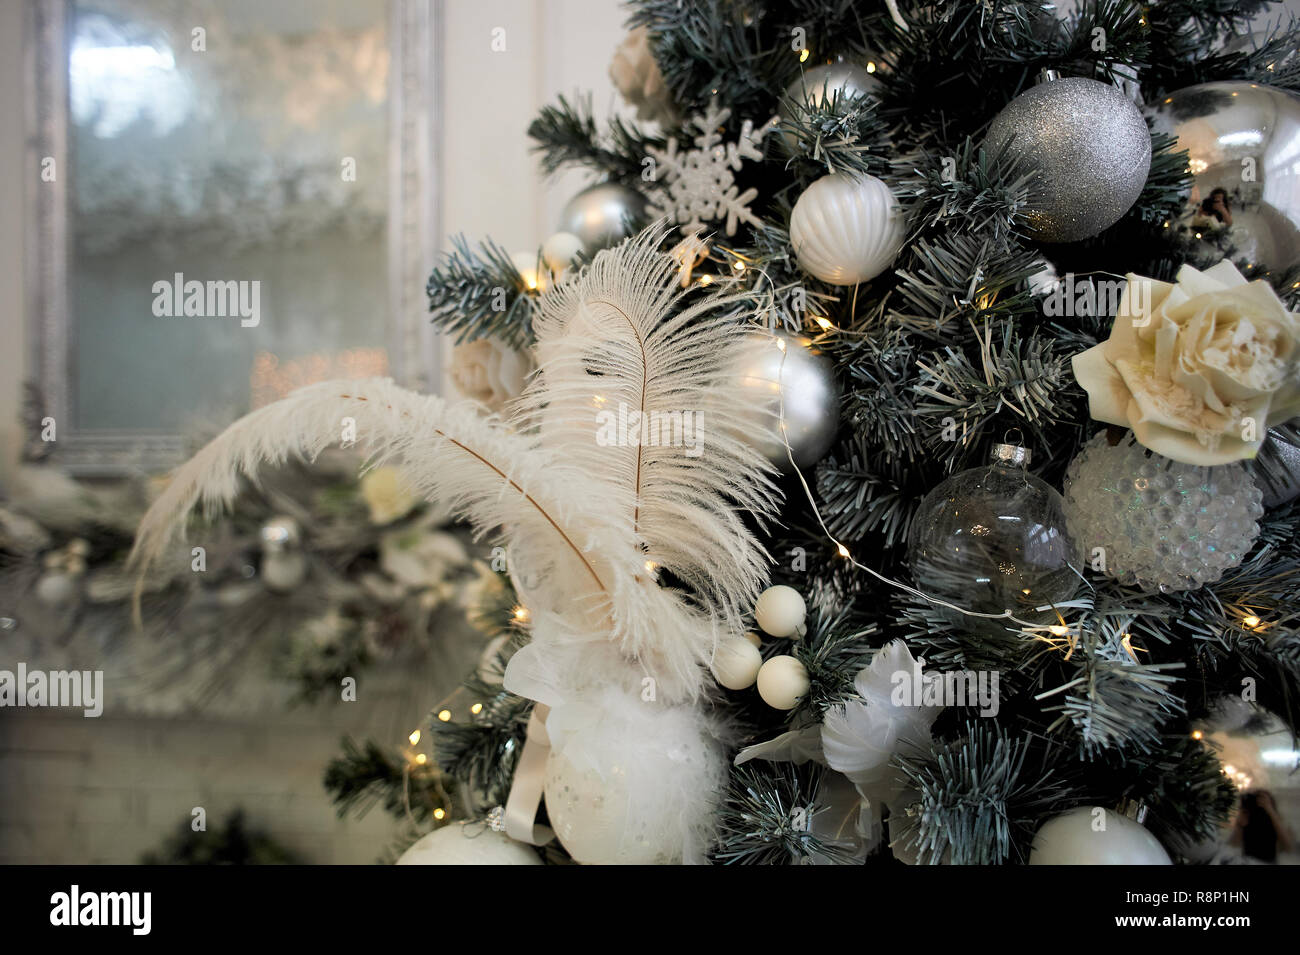 Albero Di Natale Bianco E Argento.Albero Di Natale Vestito Di Bianco E Argento Colori Con Piume Bianche E Palline Foto Stock Alamy